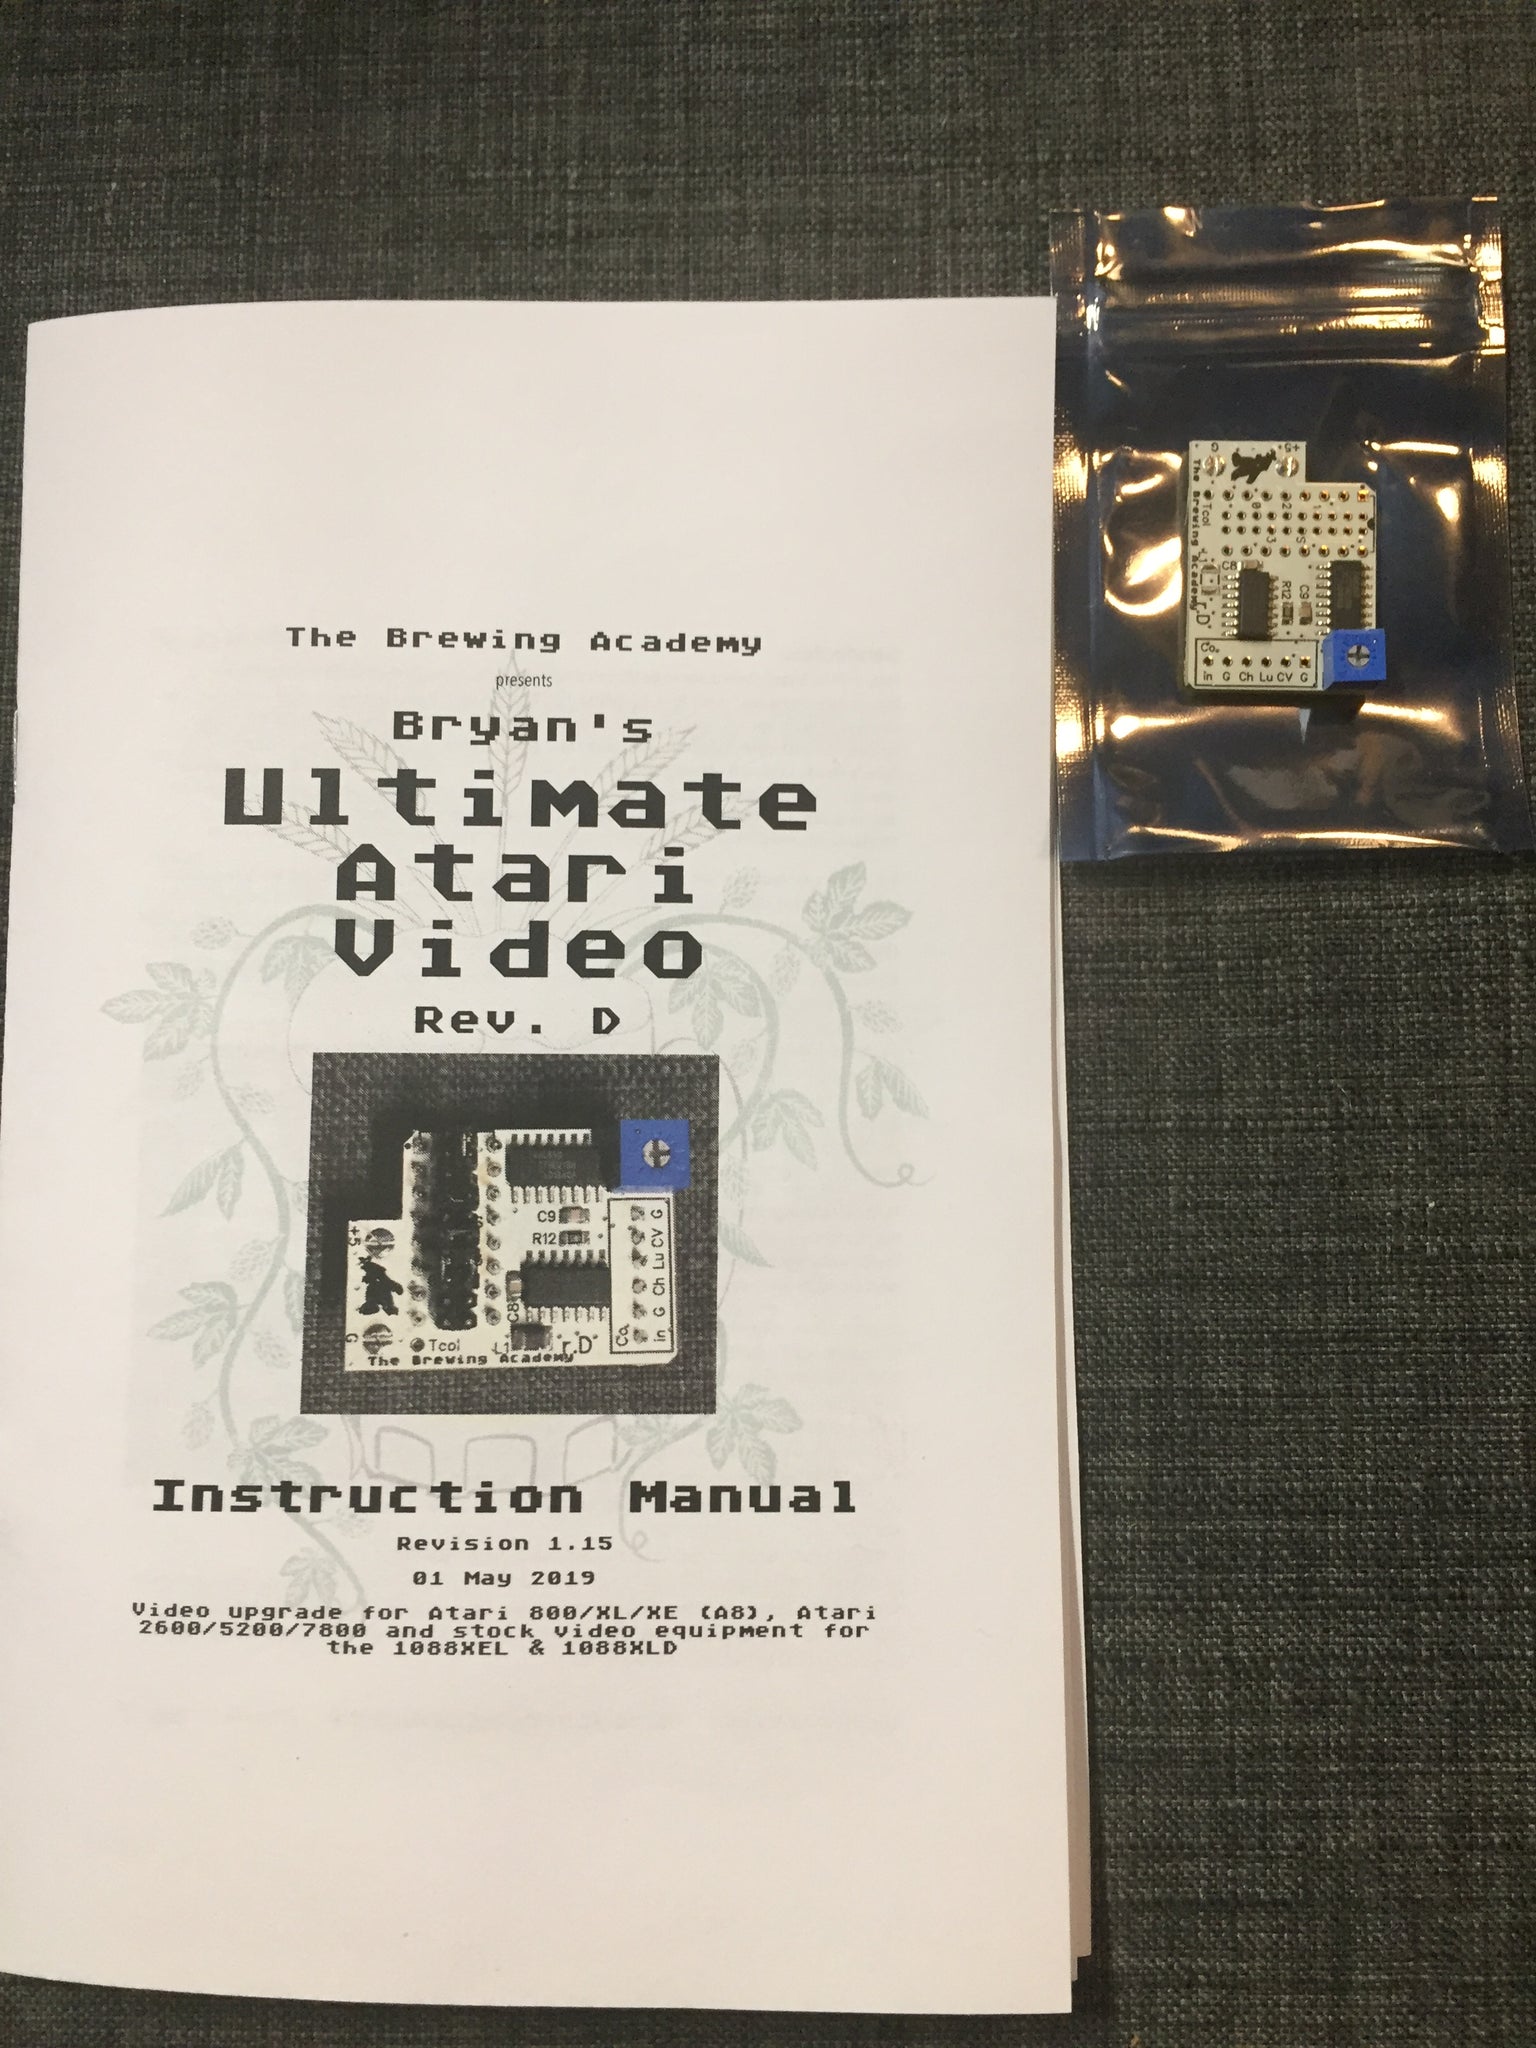 TBA's Ultimate Atari Video (UAV) board for Atari 2600